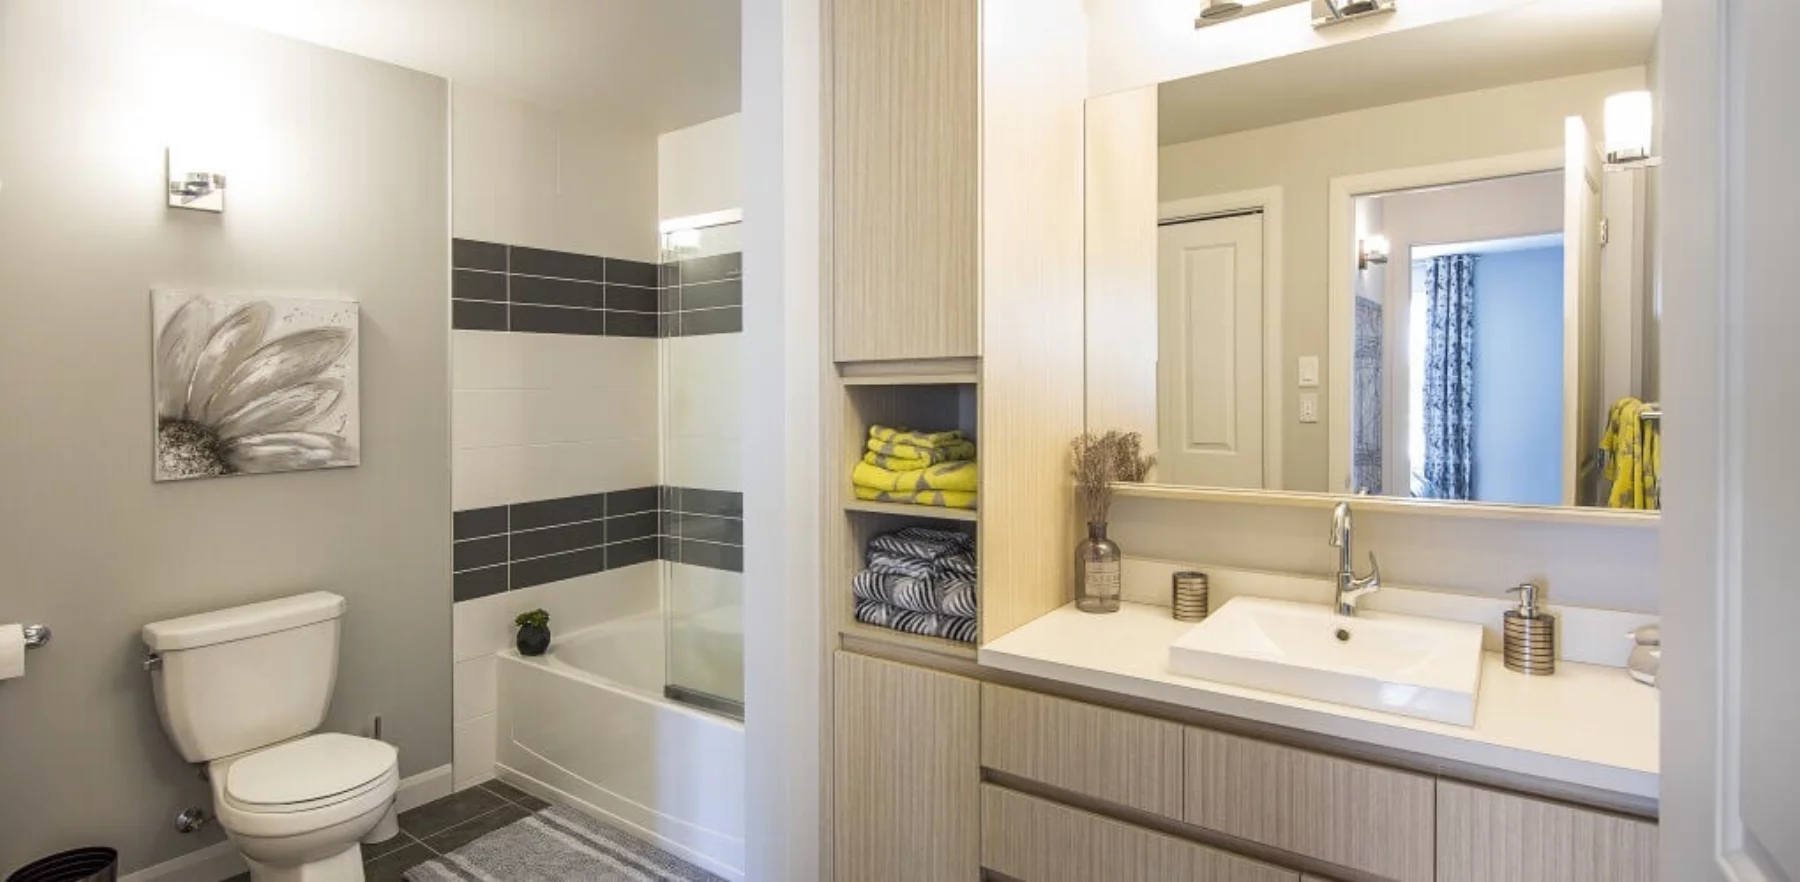 Salle de bain - Bain avec porte en verre - Robinetterie haut de gamme - Appartements 4 ½